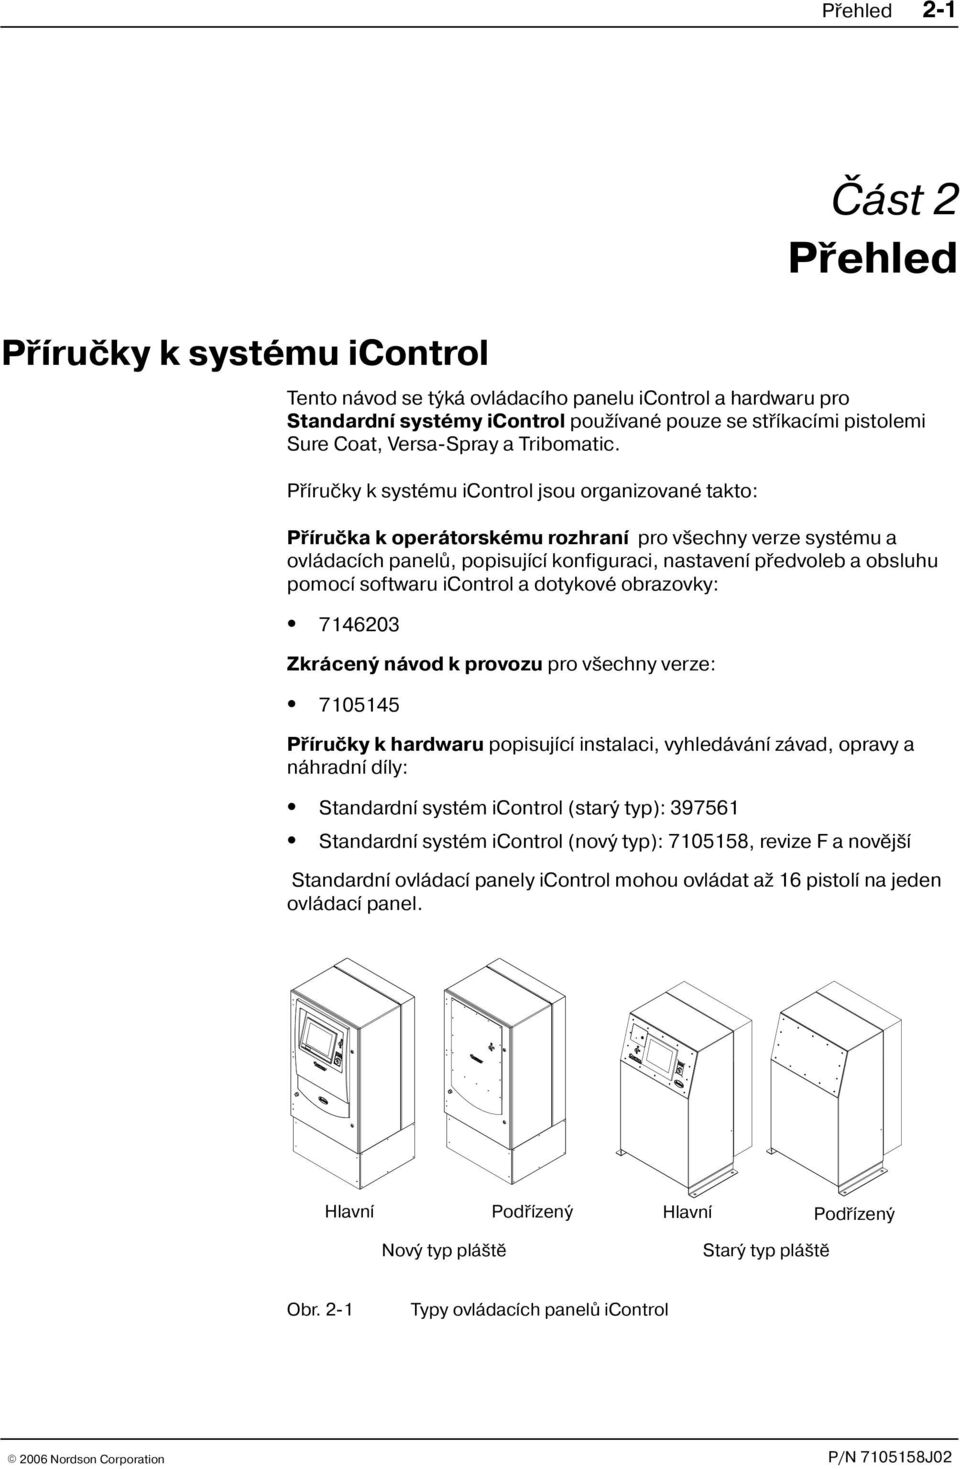 Pøíruèky k systému icontrol jsou organizované takto: Pøíruèka k operátorskému rozhraní pro v echny verze systému a ovládacích panelù, popisující konfiguraci, nastavení pøedvoleb a obsluhu pomocí